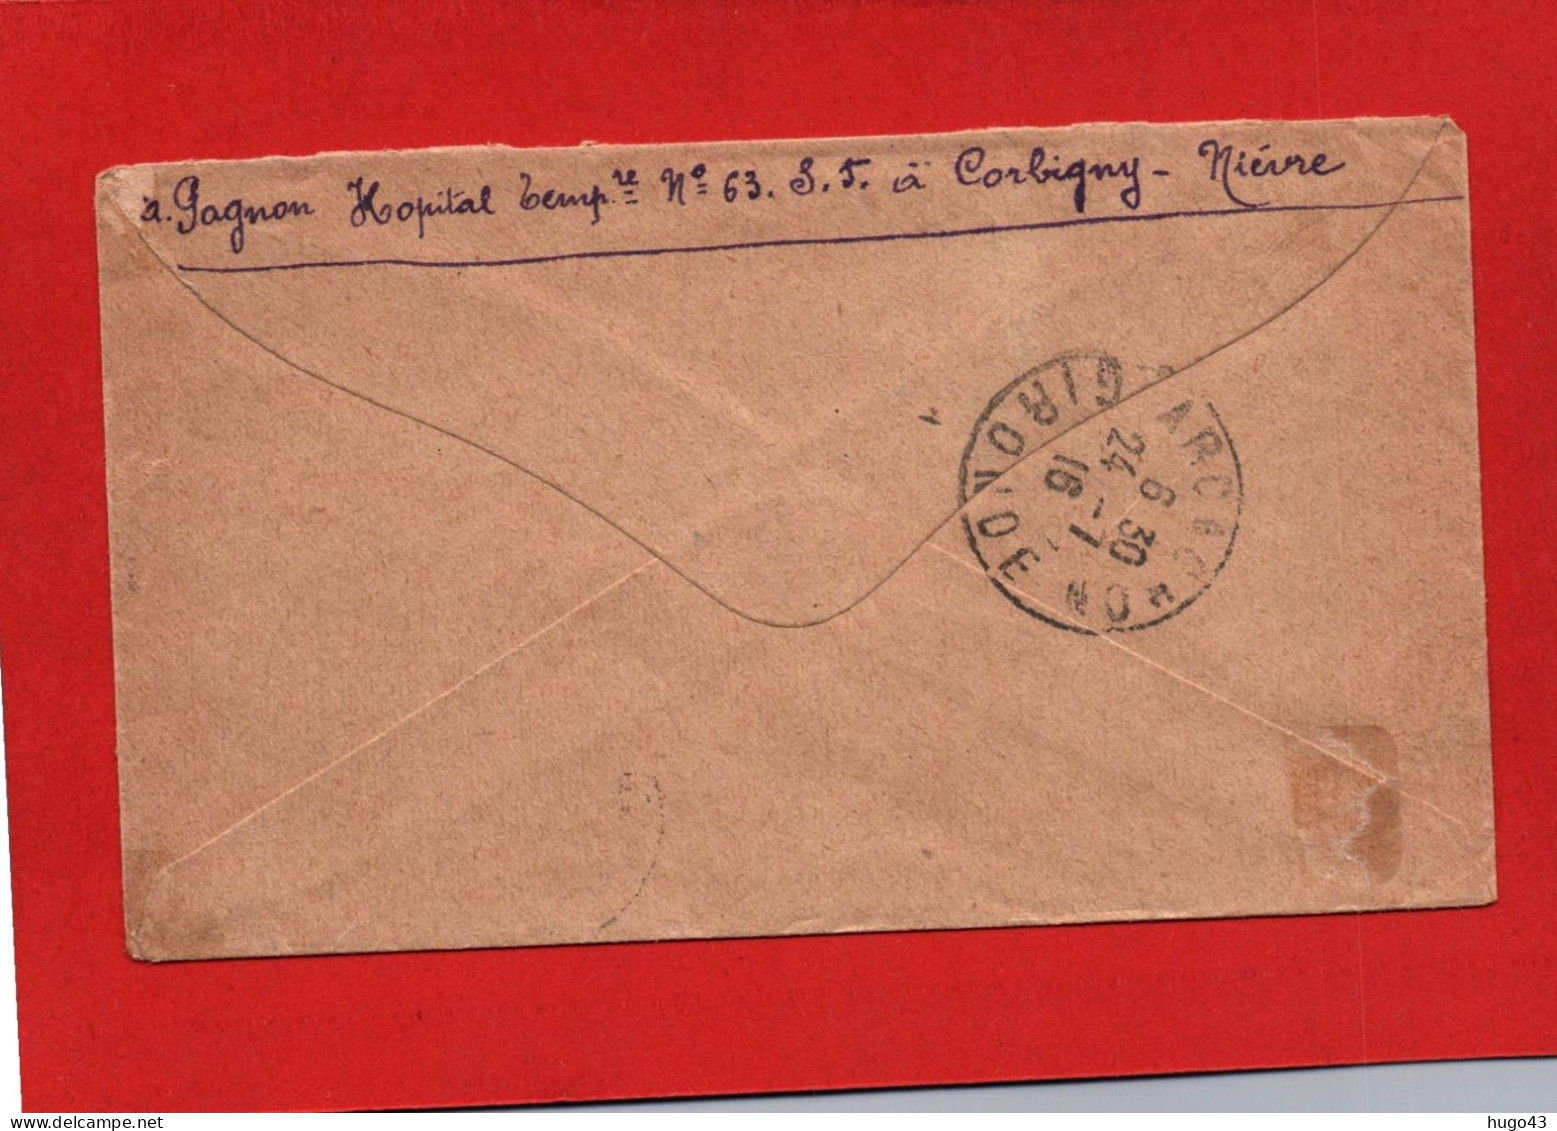 ENVELOPPE DU 21/7/1916 - CACHET HOPITAL MILITAIRE COMPLEMENTAIRE N° 63 - A CORBIGNY DANS LA NIEVRE - Covers & Documents